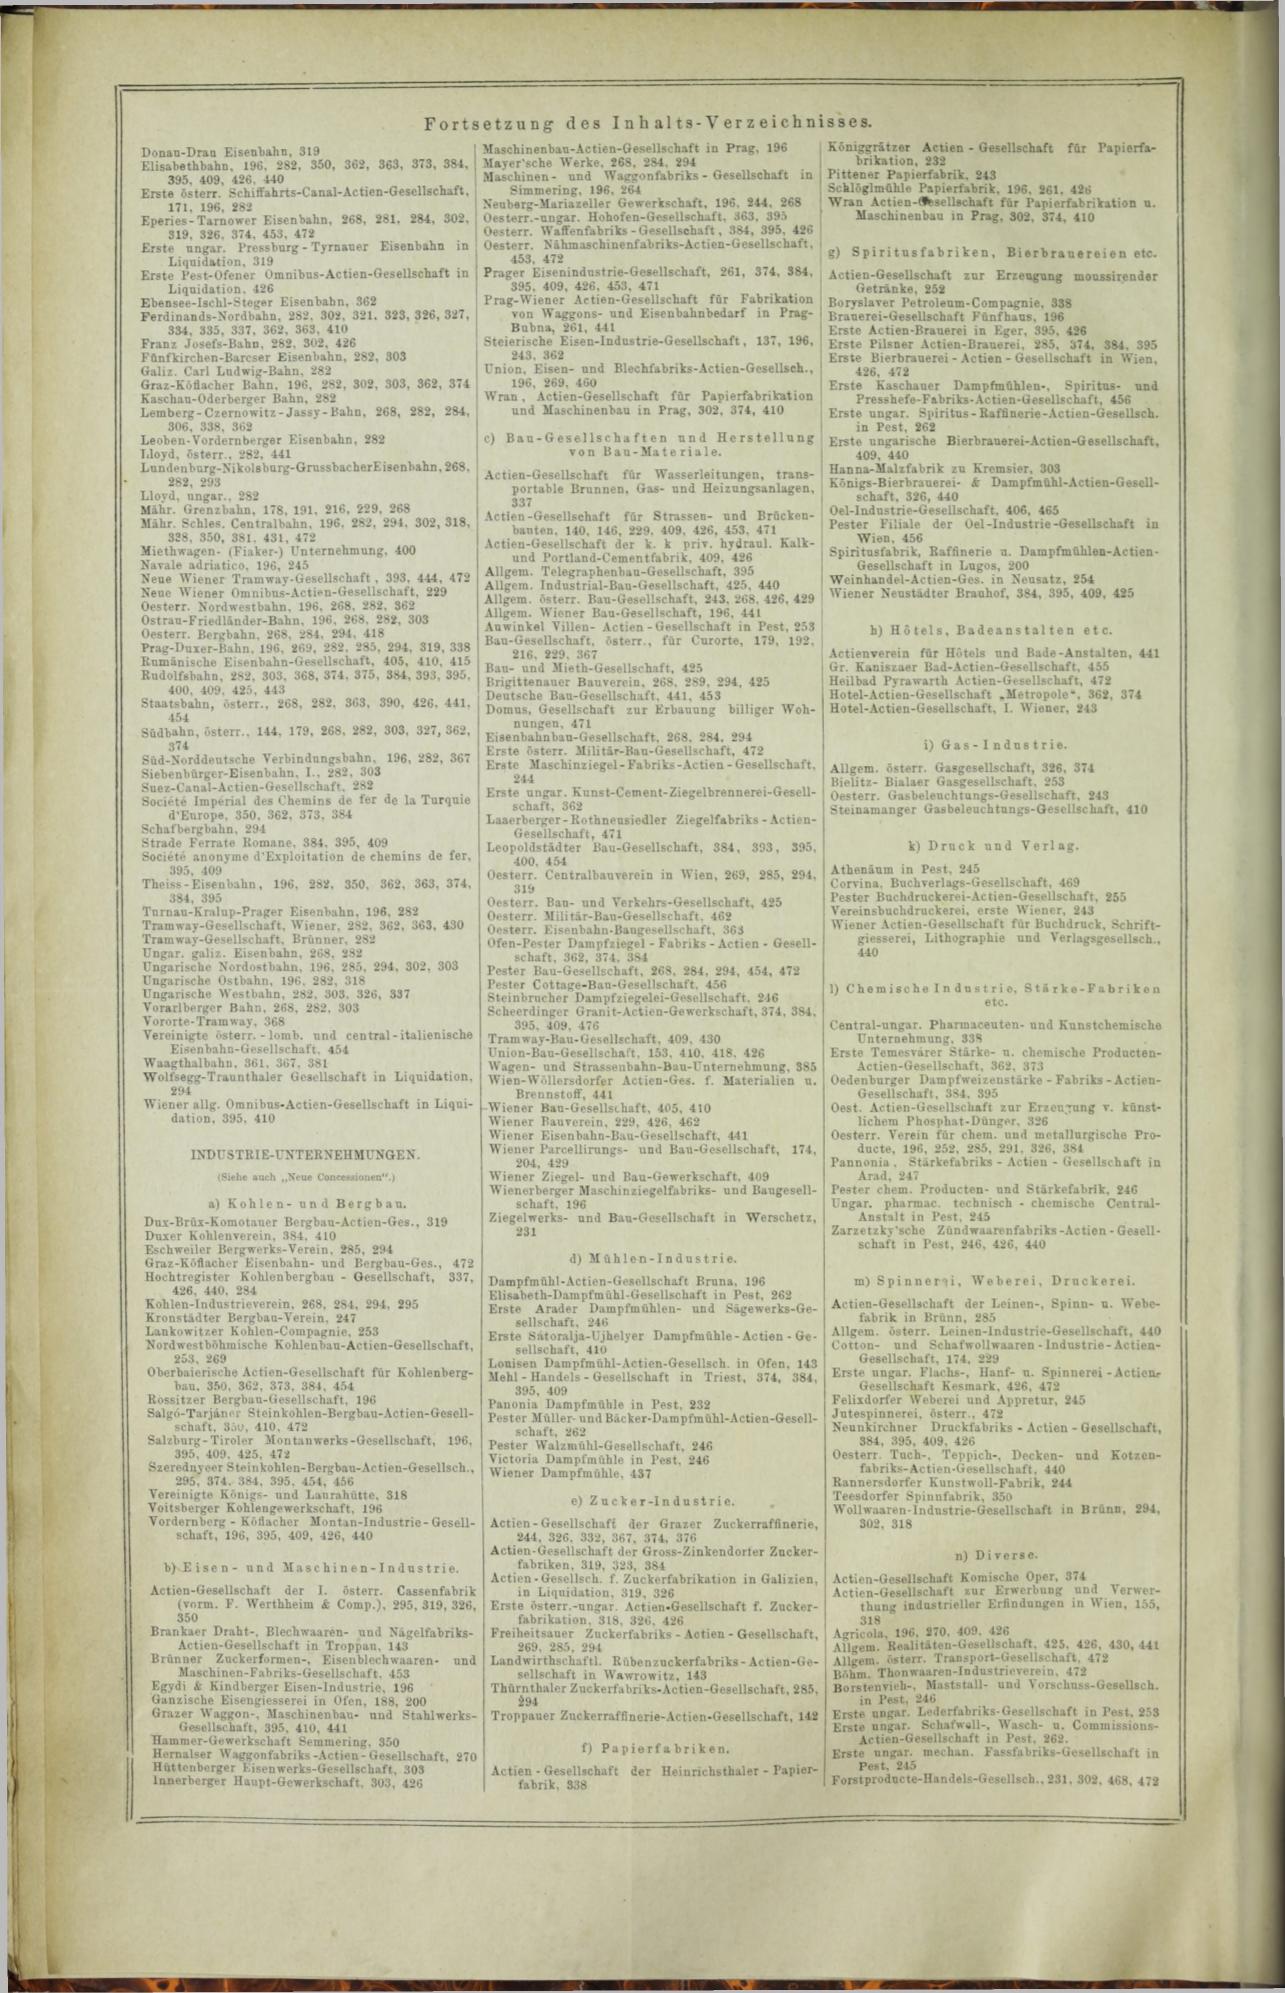 Der Tresor 02.10.1872 - Page 20